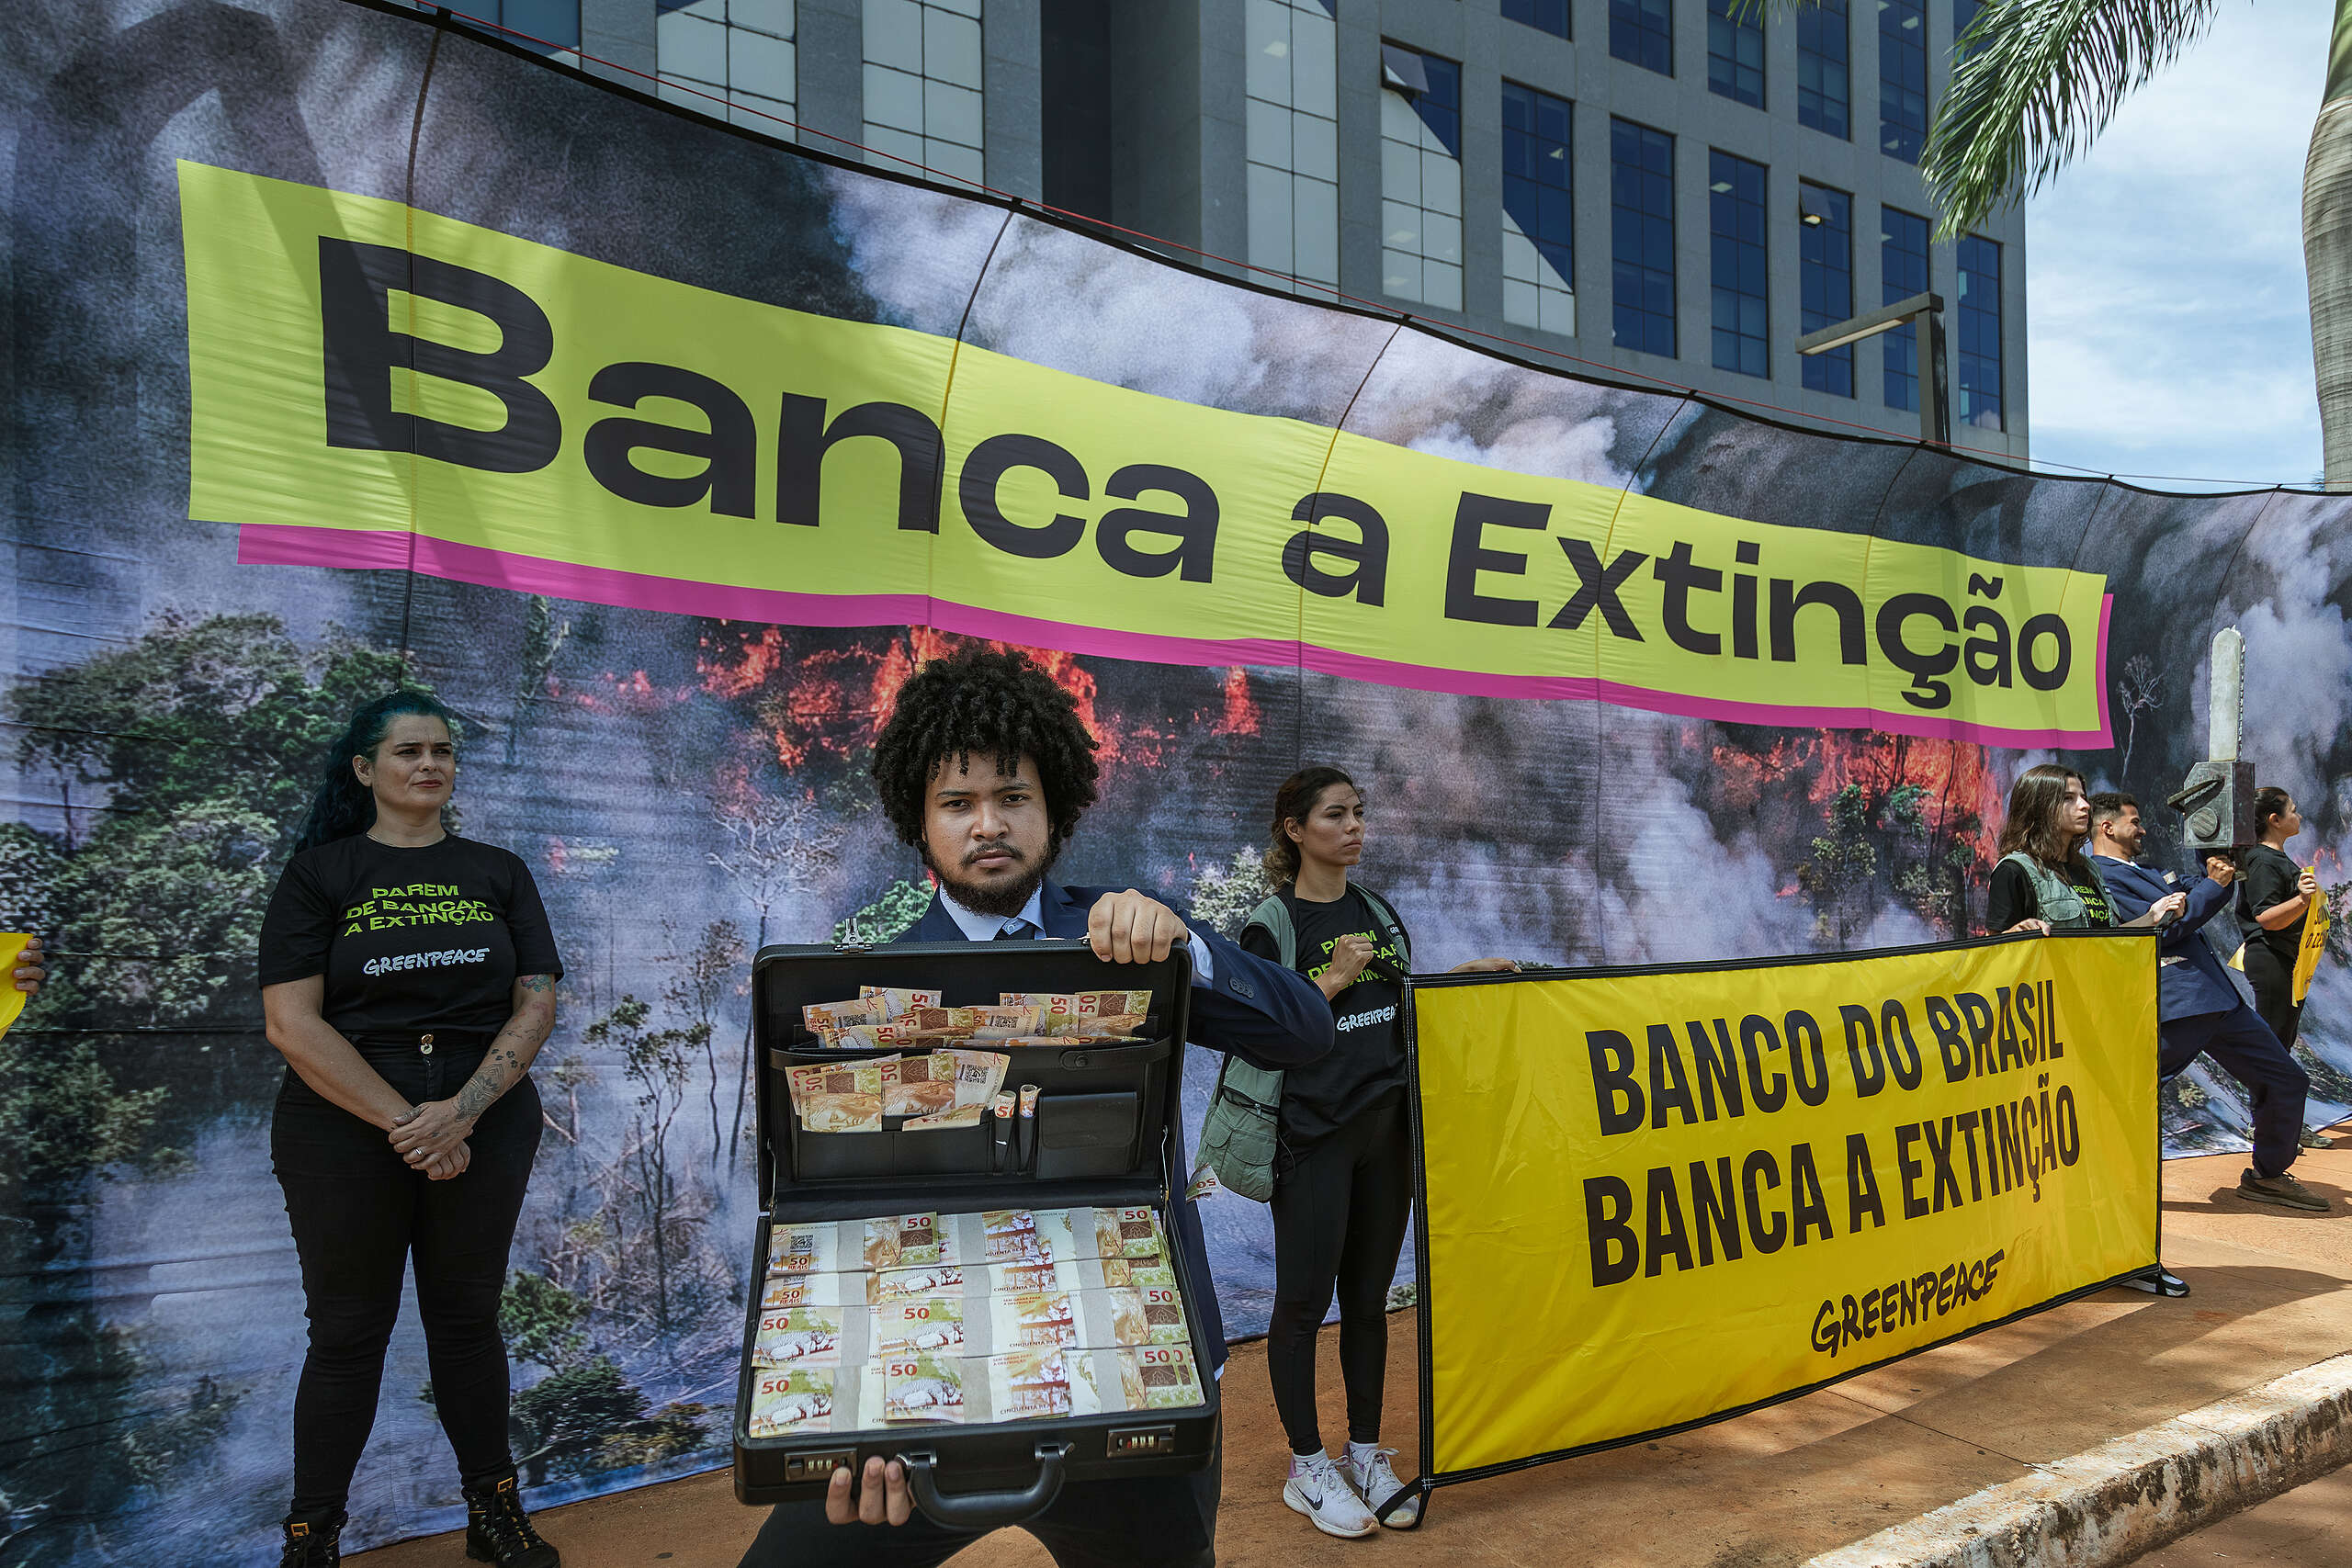 Banco do Brasil: pare de bancar a extinção!